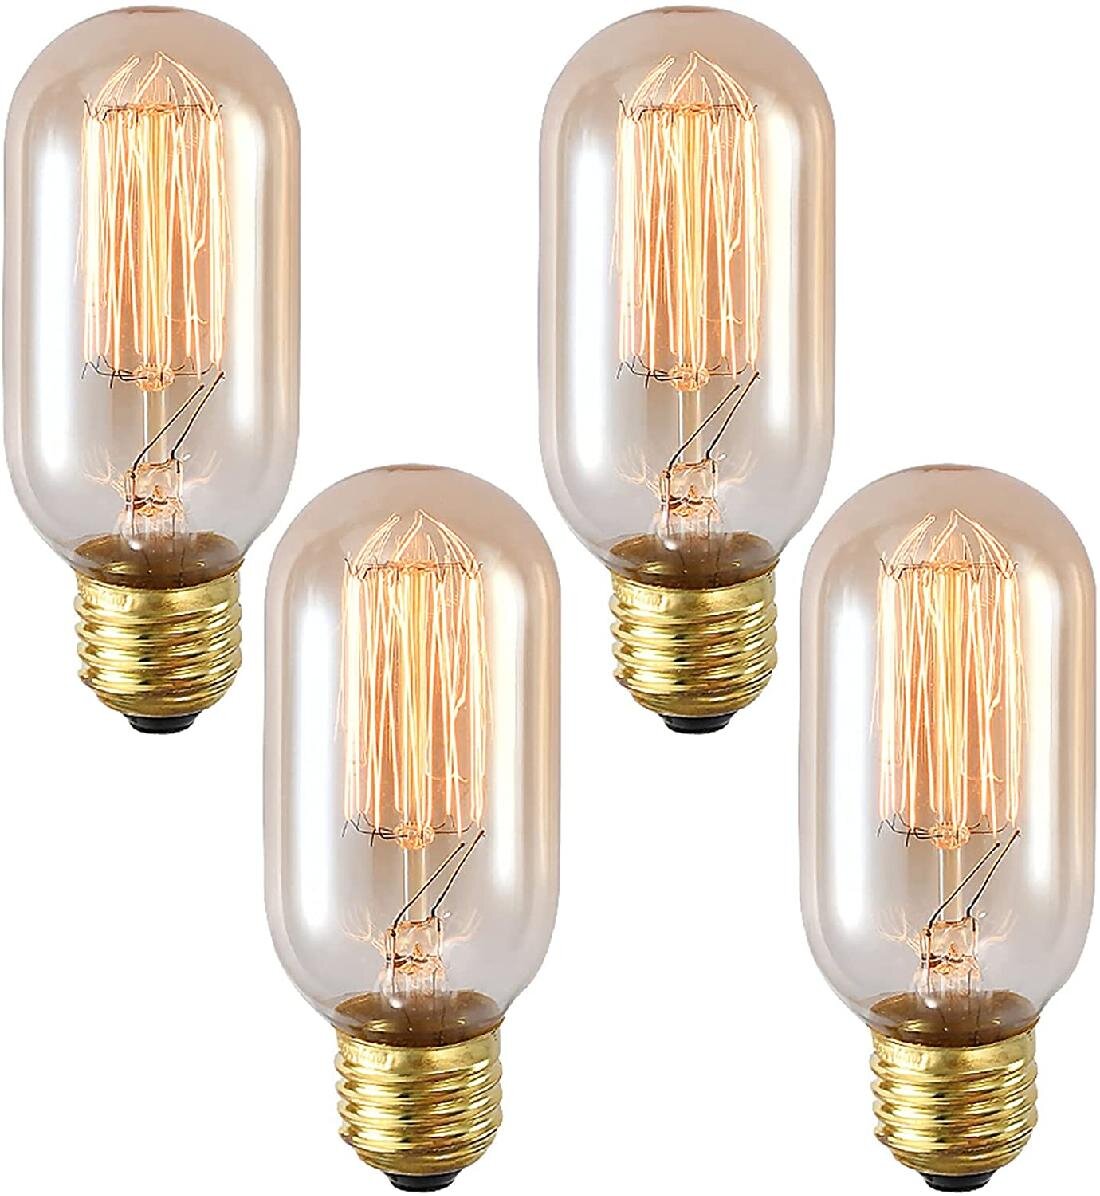 4 pack Simple Vintage A19 Edison Light Bulb E26 40W 120V Antique Retro Clear 